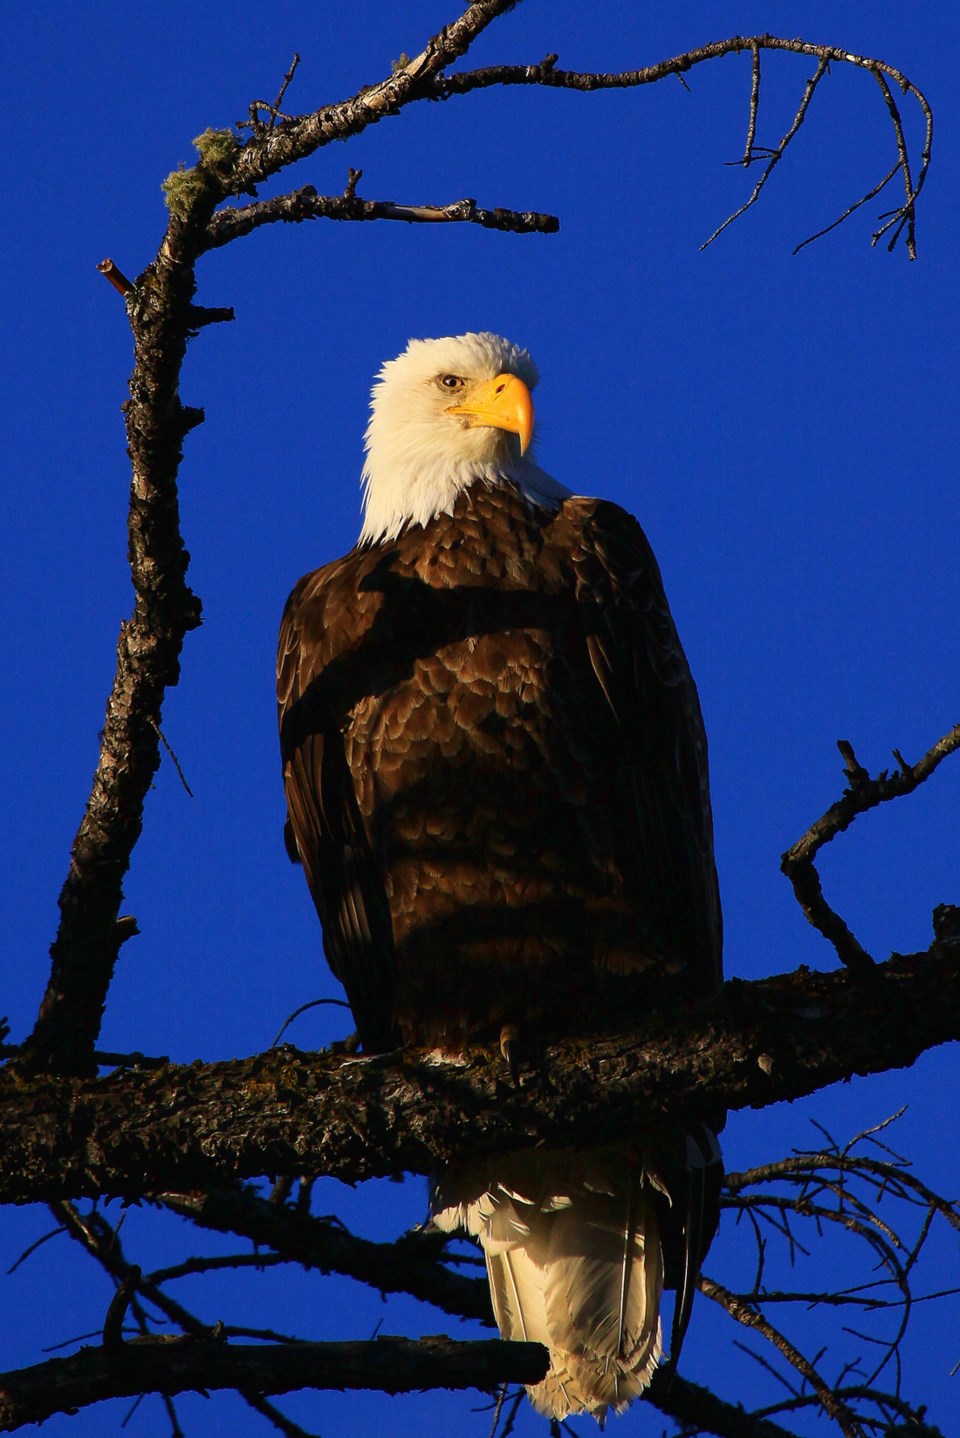 An eagle taken using high-dynamic-range imaging.